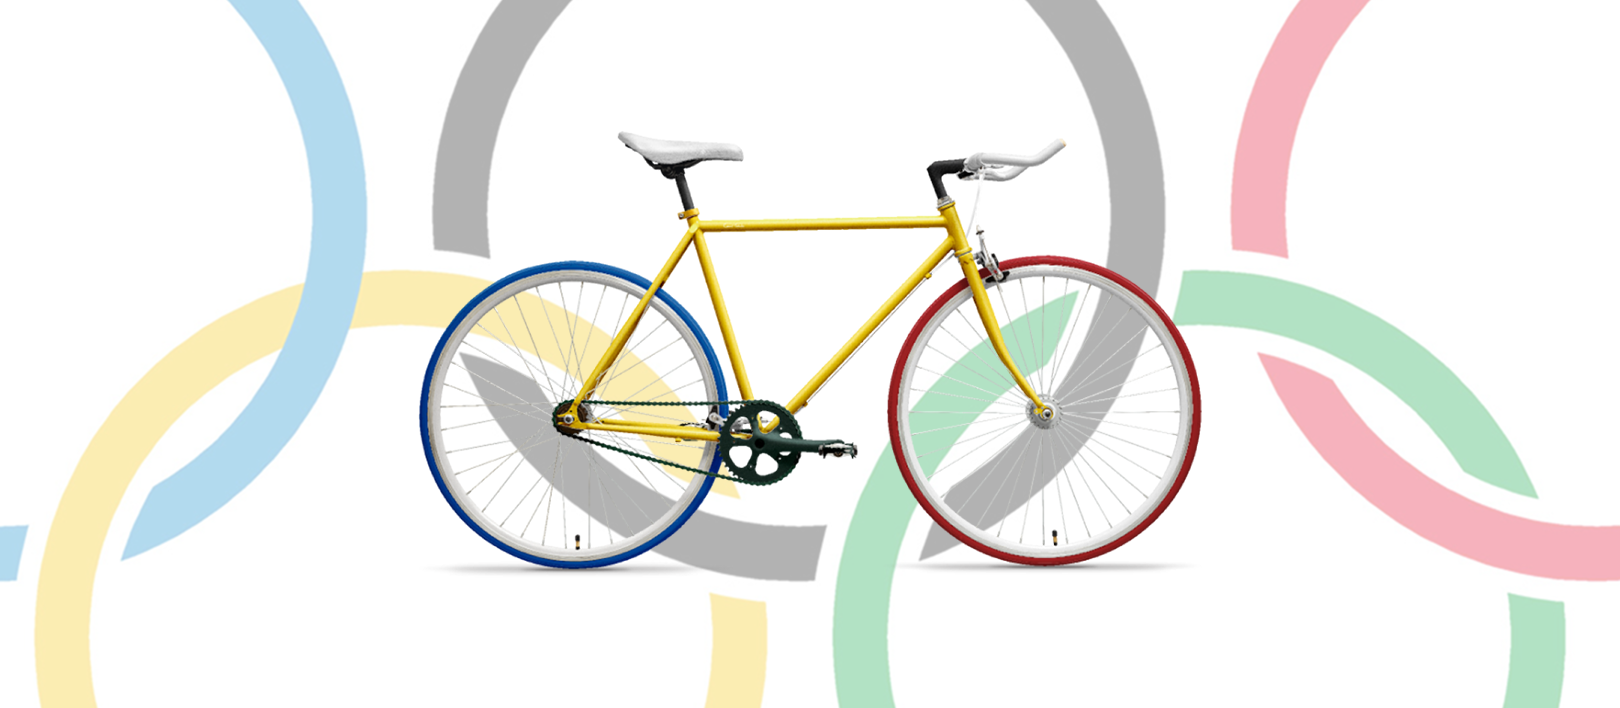 オリンピック色のオリジナル自転車をデザインしてみました